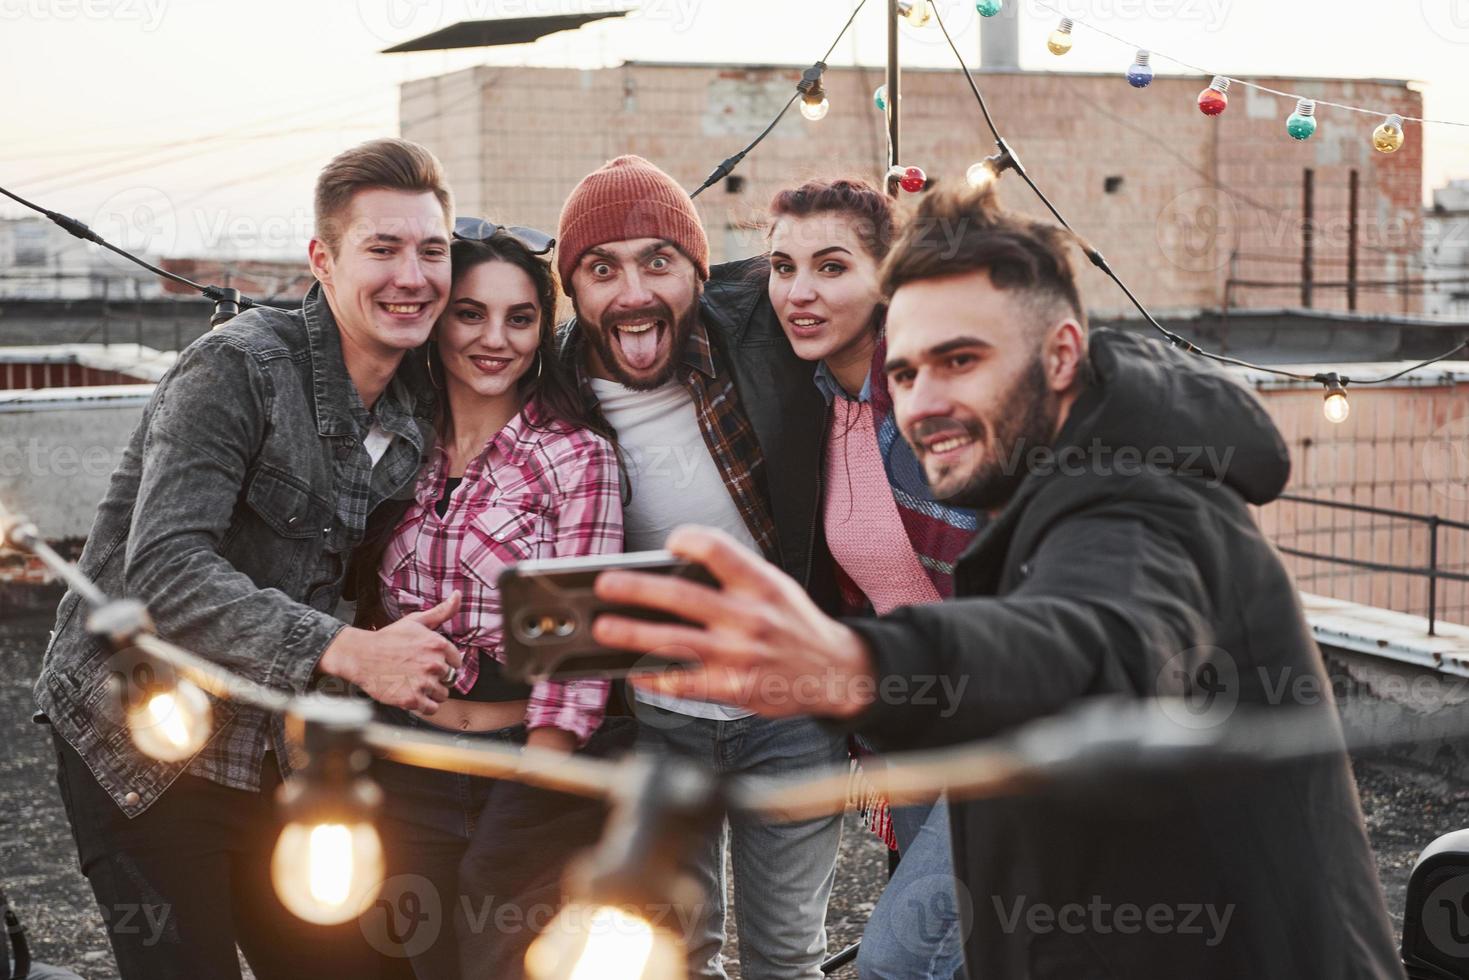 man in het midden maakt een grappig gezicht. groep jonge vrolijke vrienden die plezier hebben, elkaar knuffelen en selfie nemen op het dak met versierde gloeilampen foto